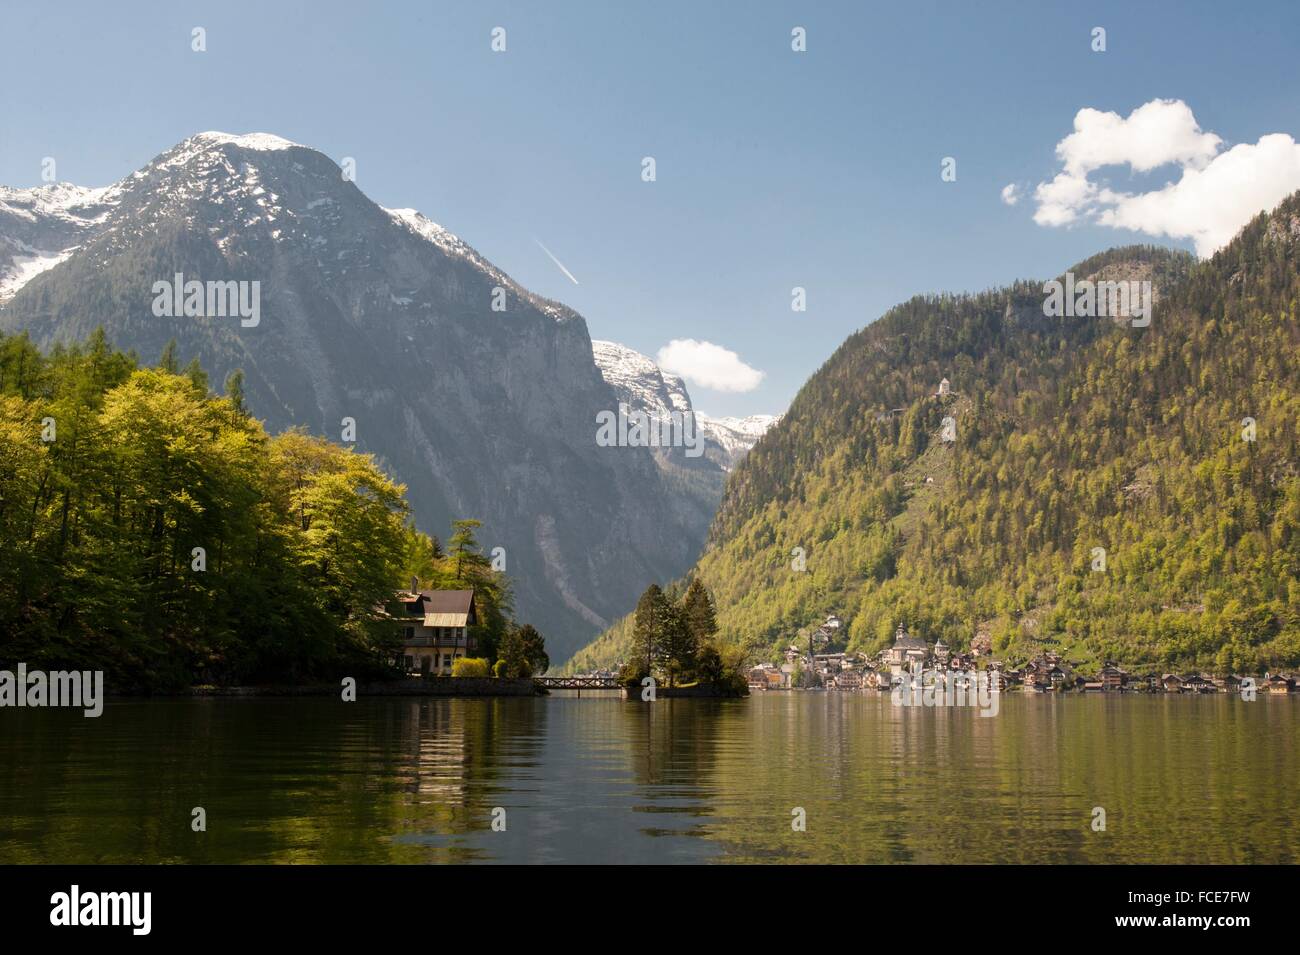 Lake Hallstatt, Austria Alps Stock Photo